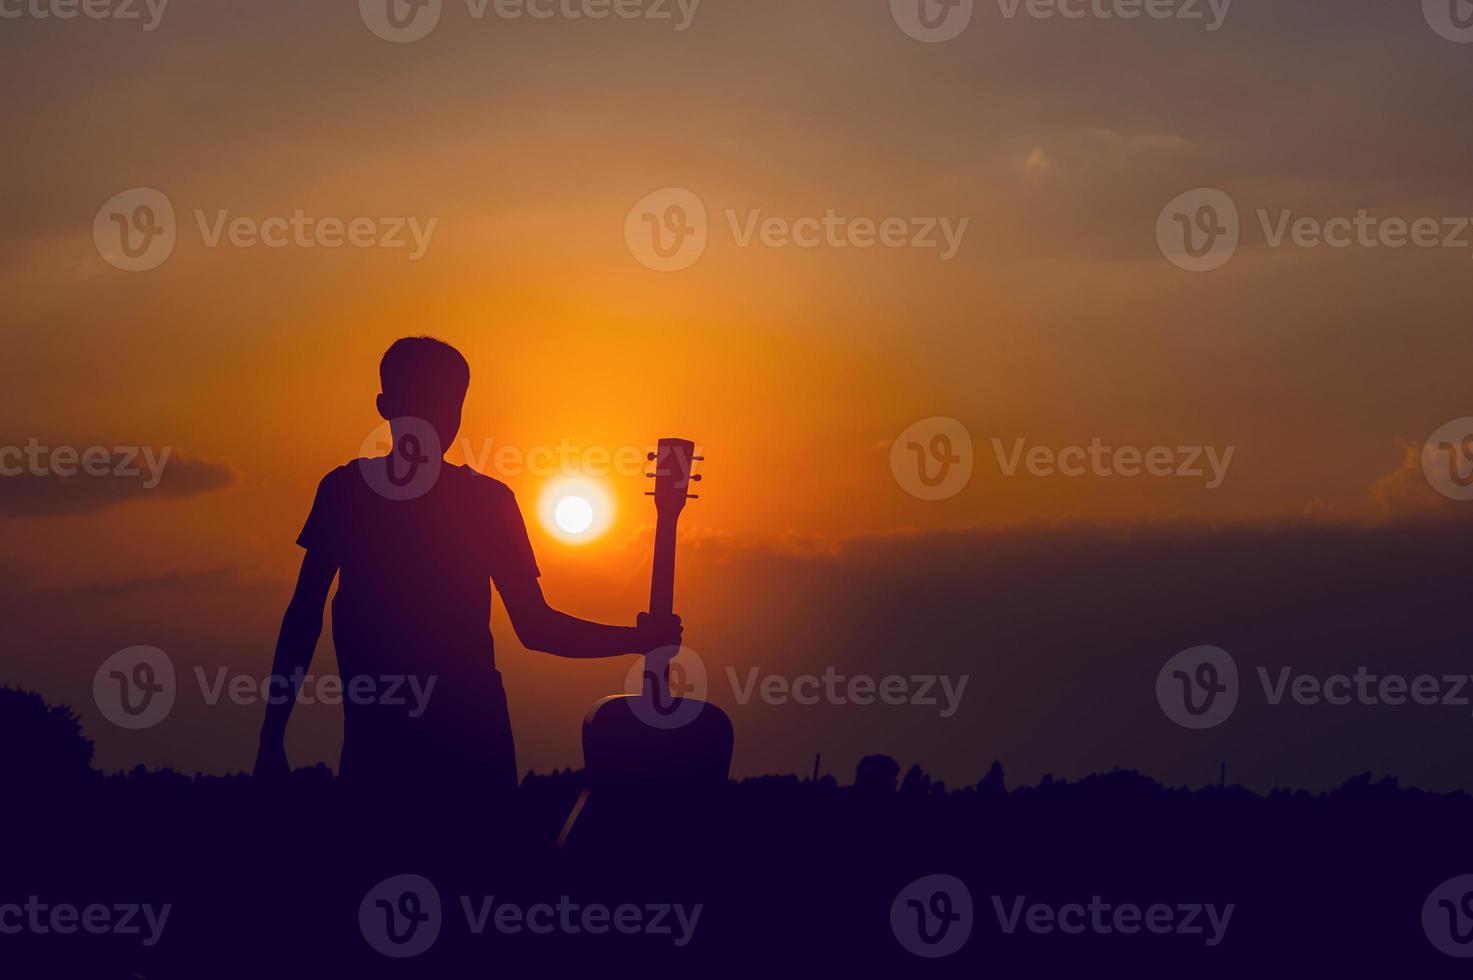 siluetten av en gitarrist som håller en gitarr och har ett solnedgångs-, siluettkoncept. foto